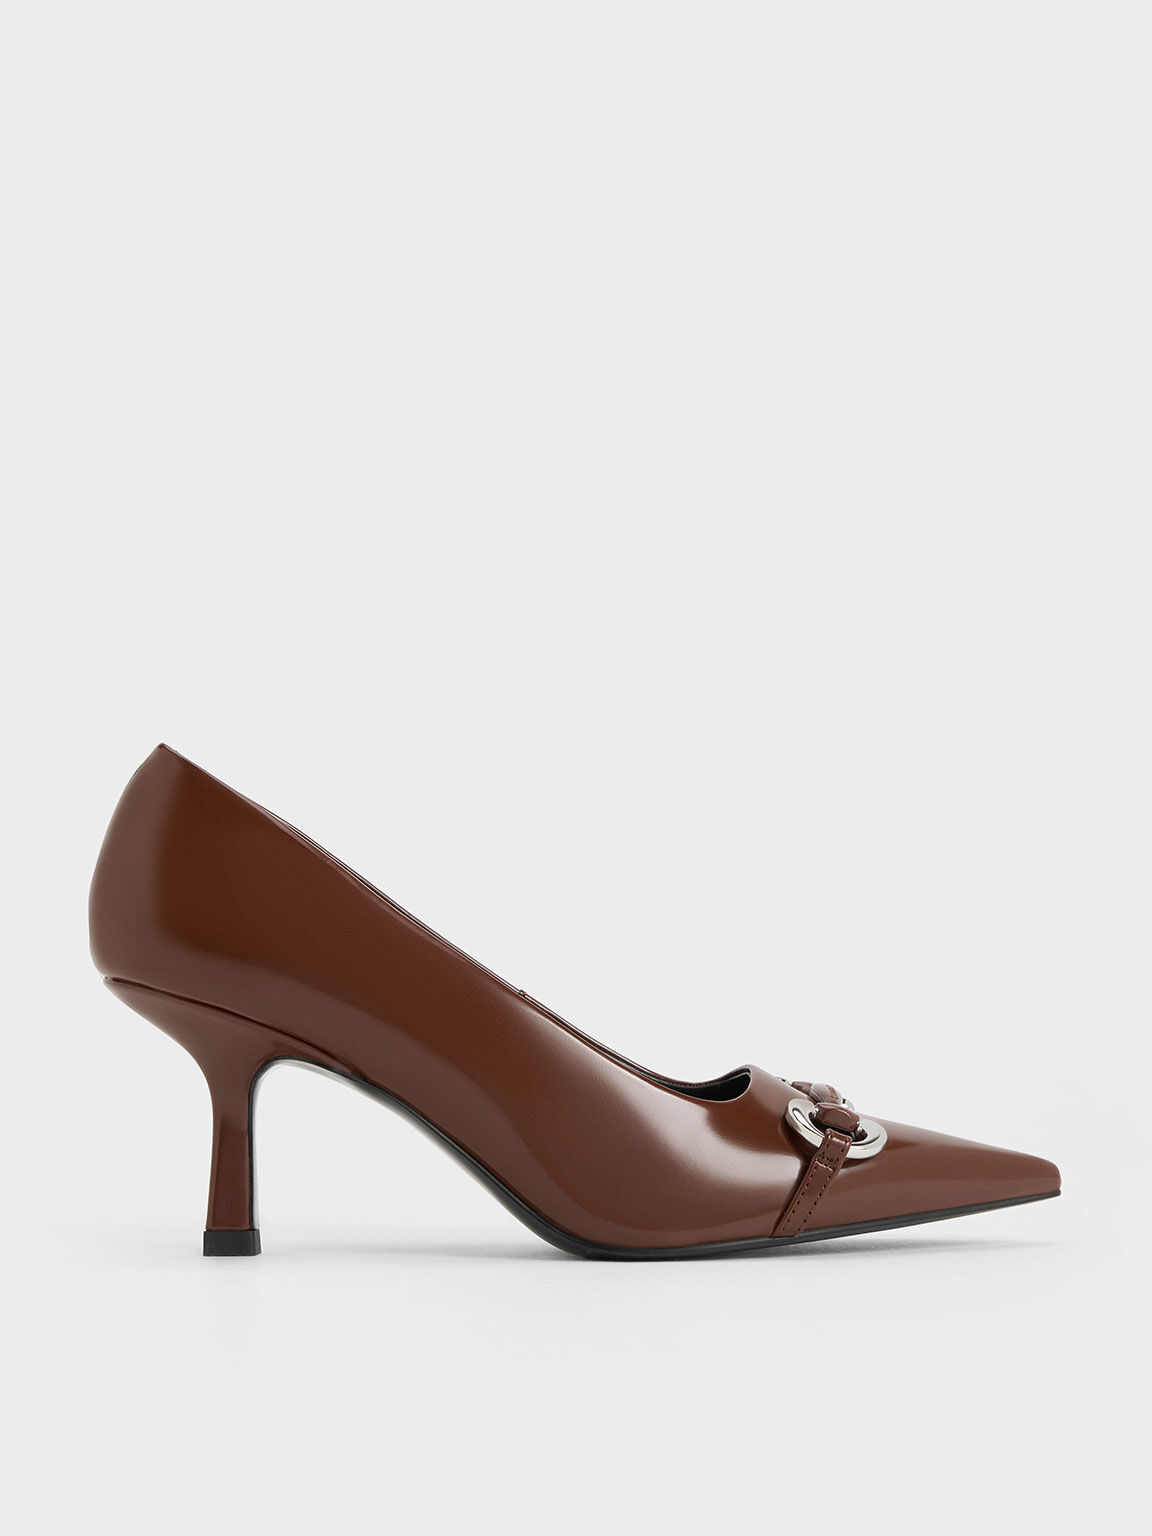 Buy BRUNO MANETTI Leather Slipon Women's Casual Wear Heels | Shoppers Stop